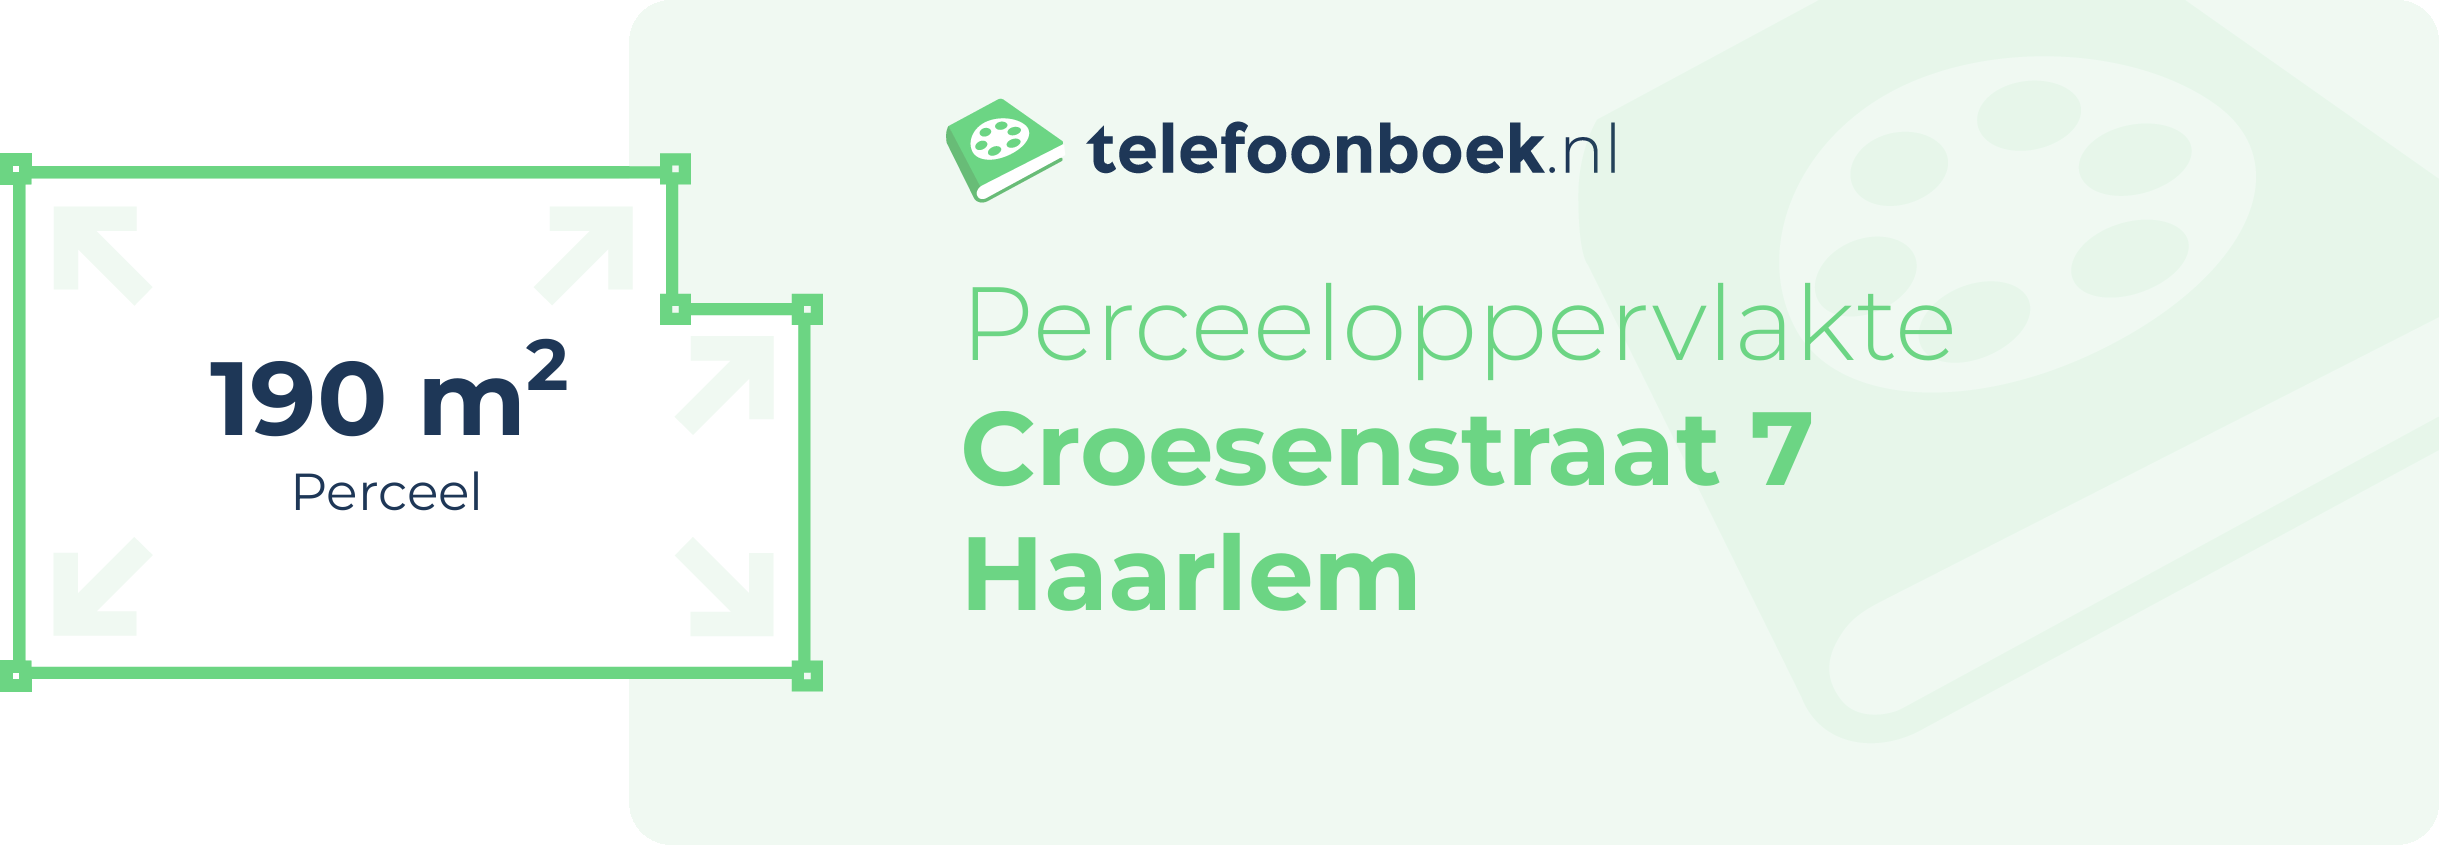 Perceeloppervlakte Croesenstraat 7 Haarlem